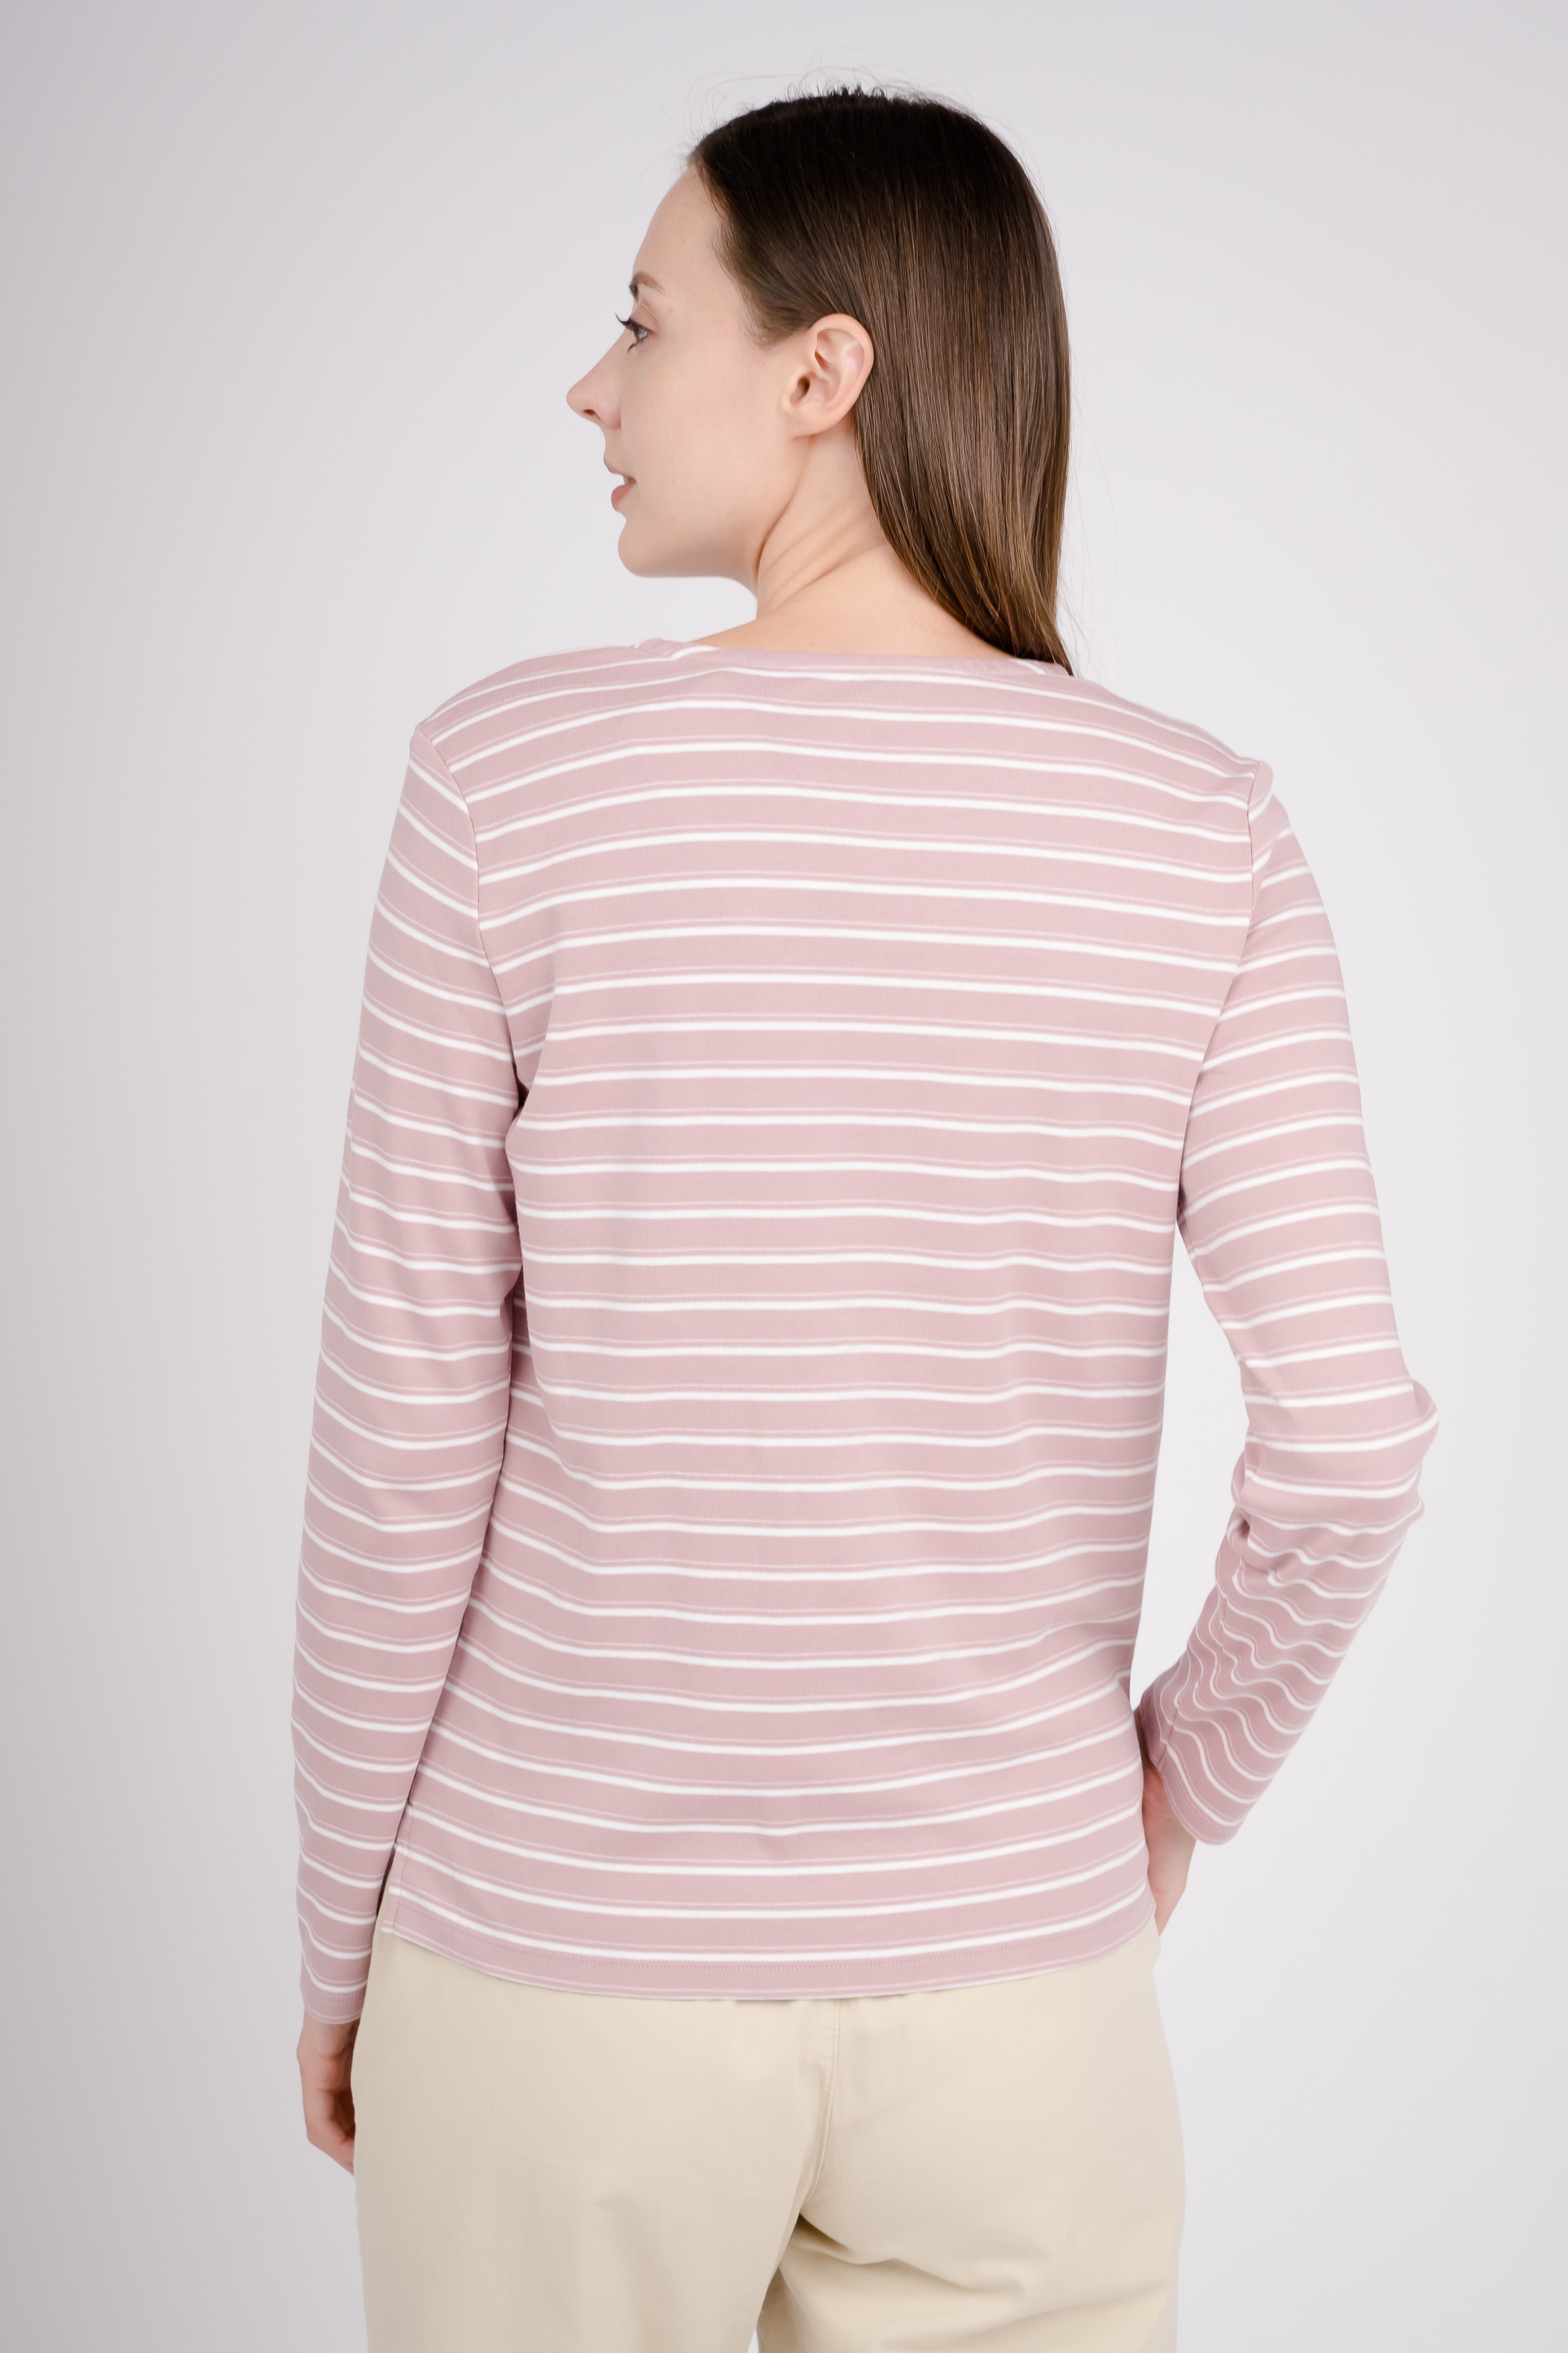 GIORDANO Langarmshirt, in tollem Streifen-Design für kaufen | BAUR